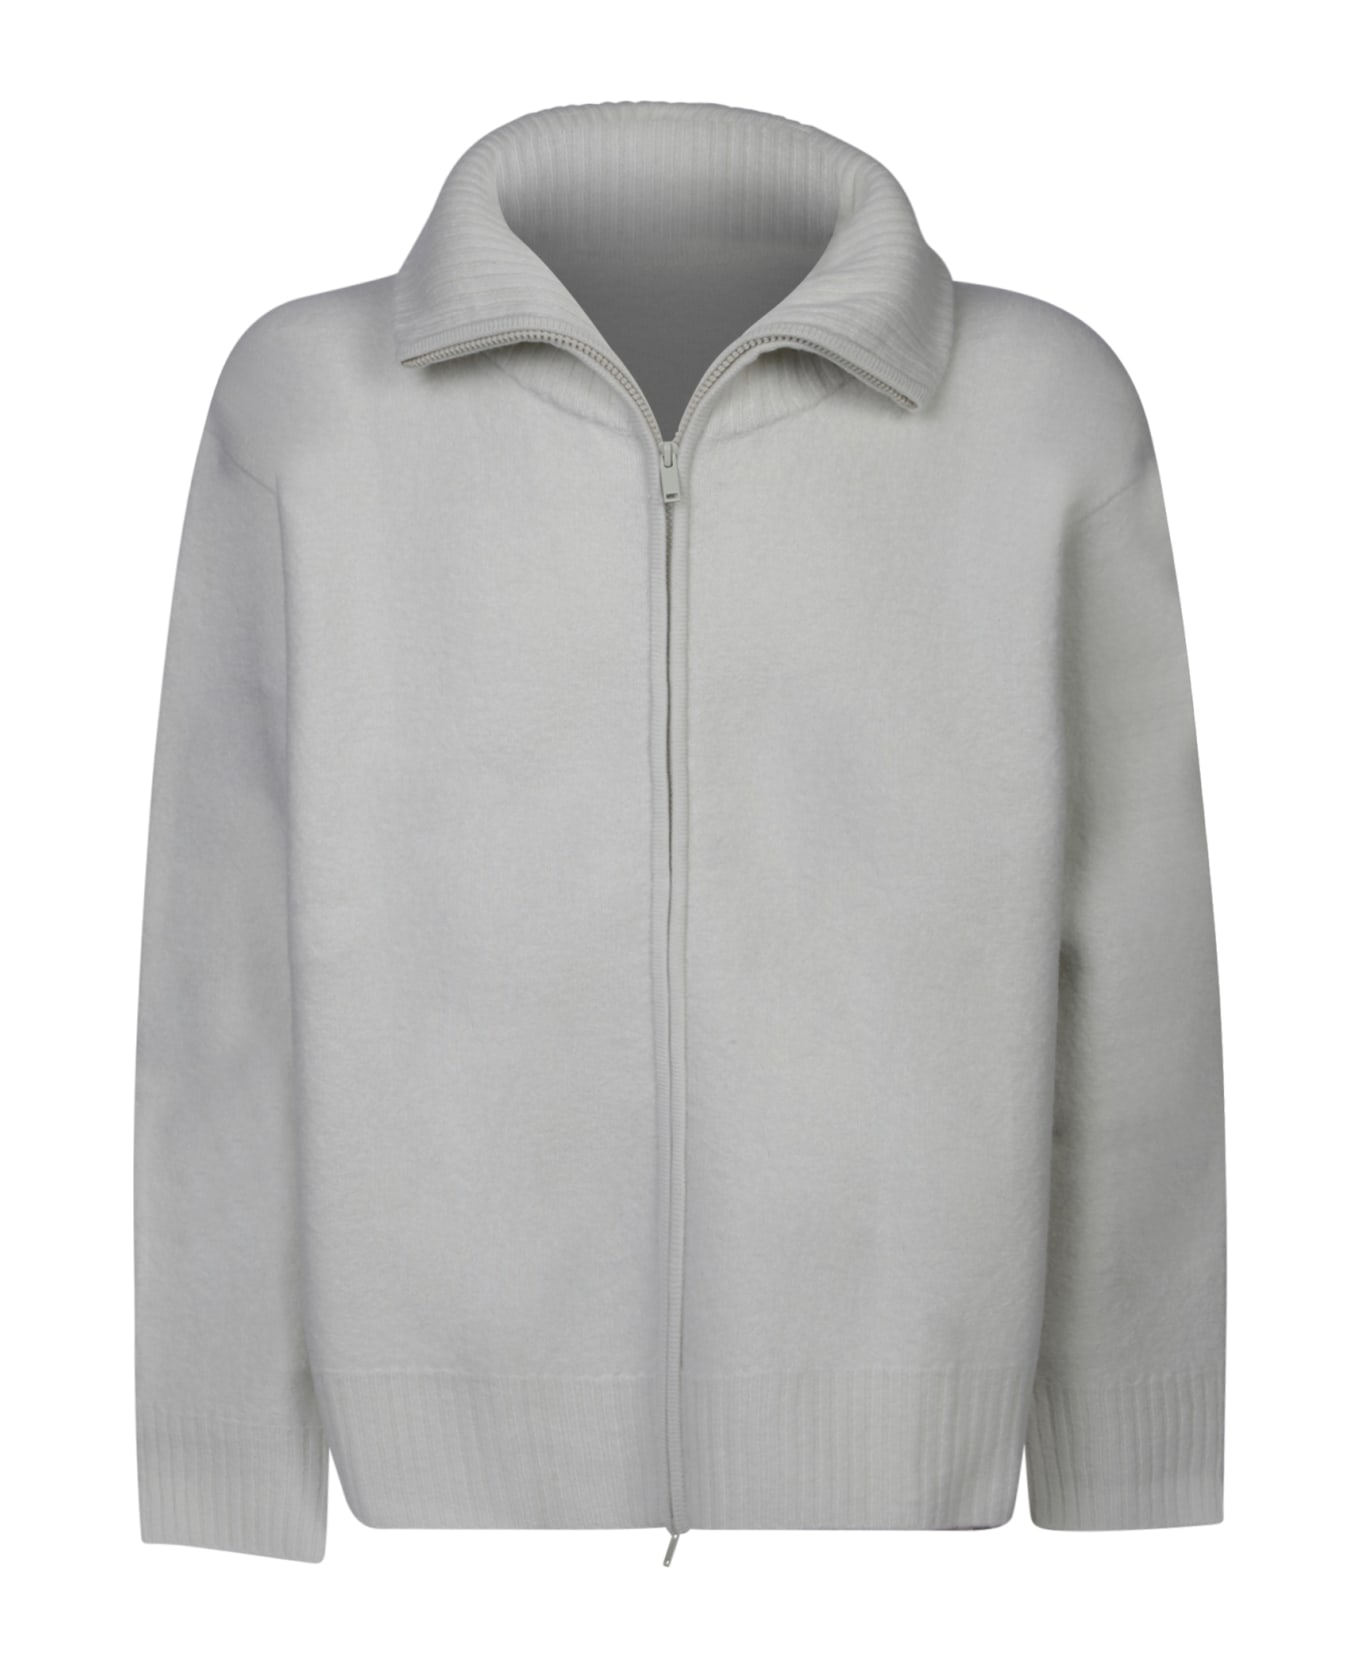 Studio Nicholson Iwaki White Pullover Polo Shirt - White